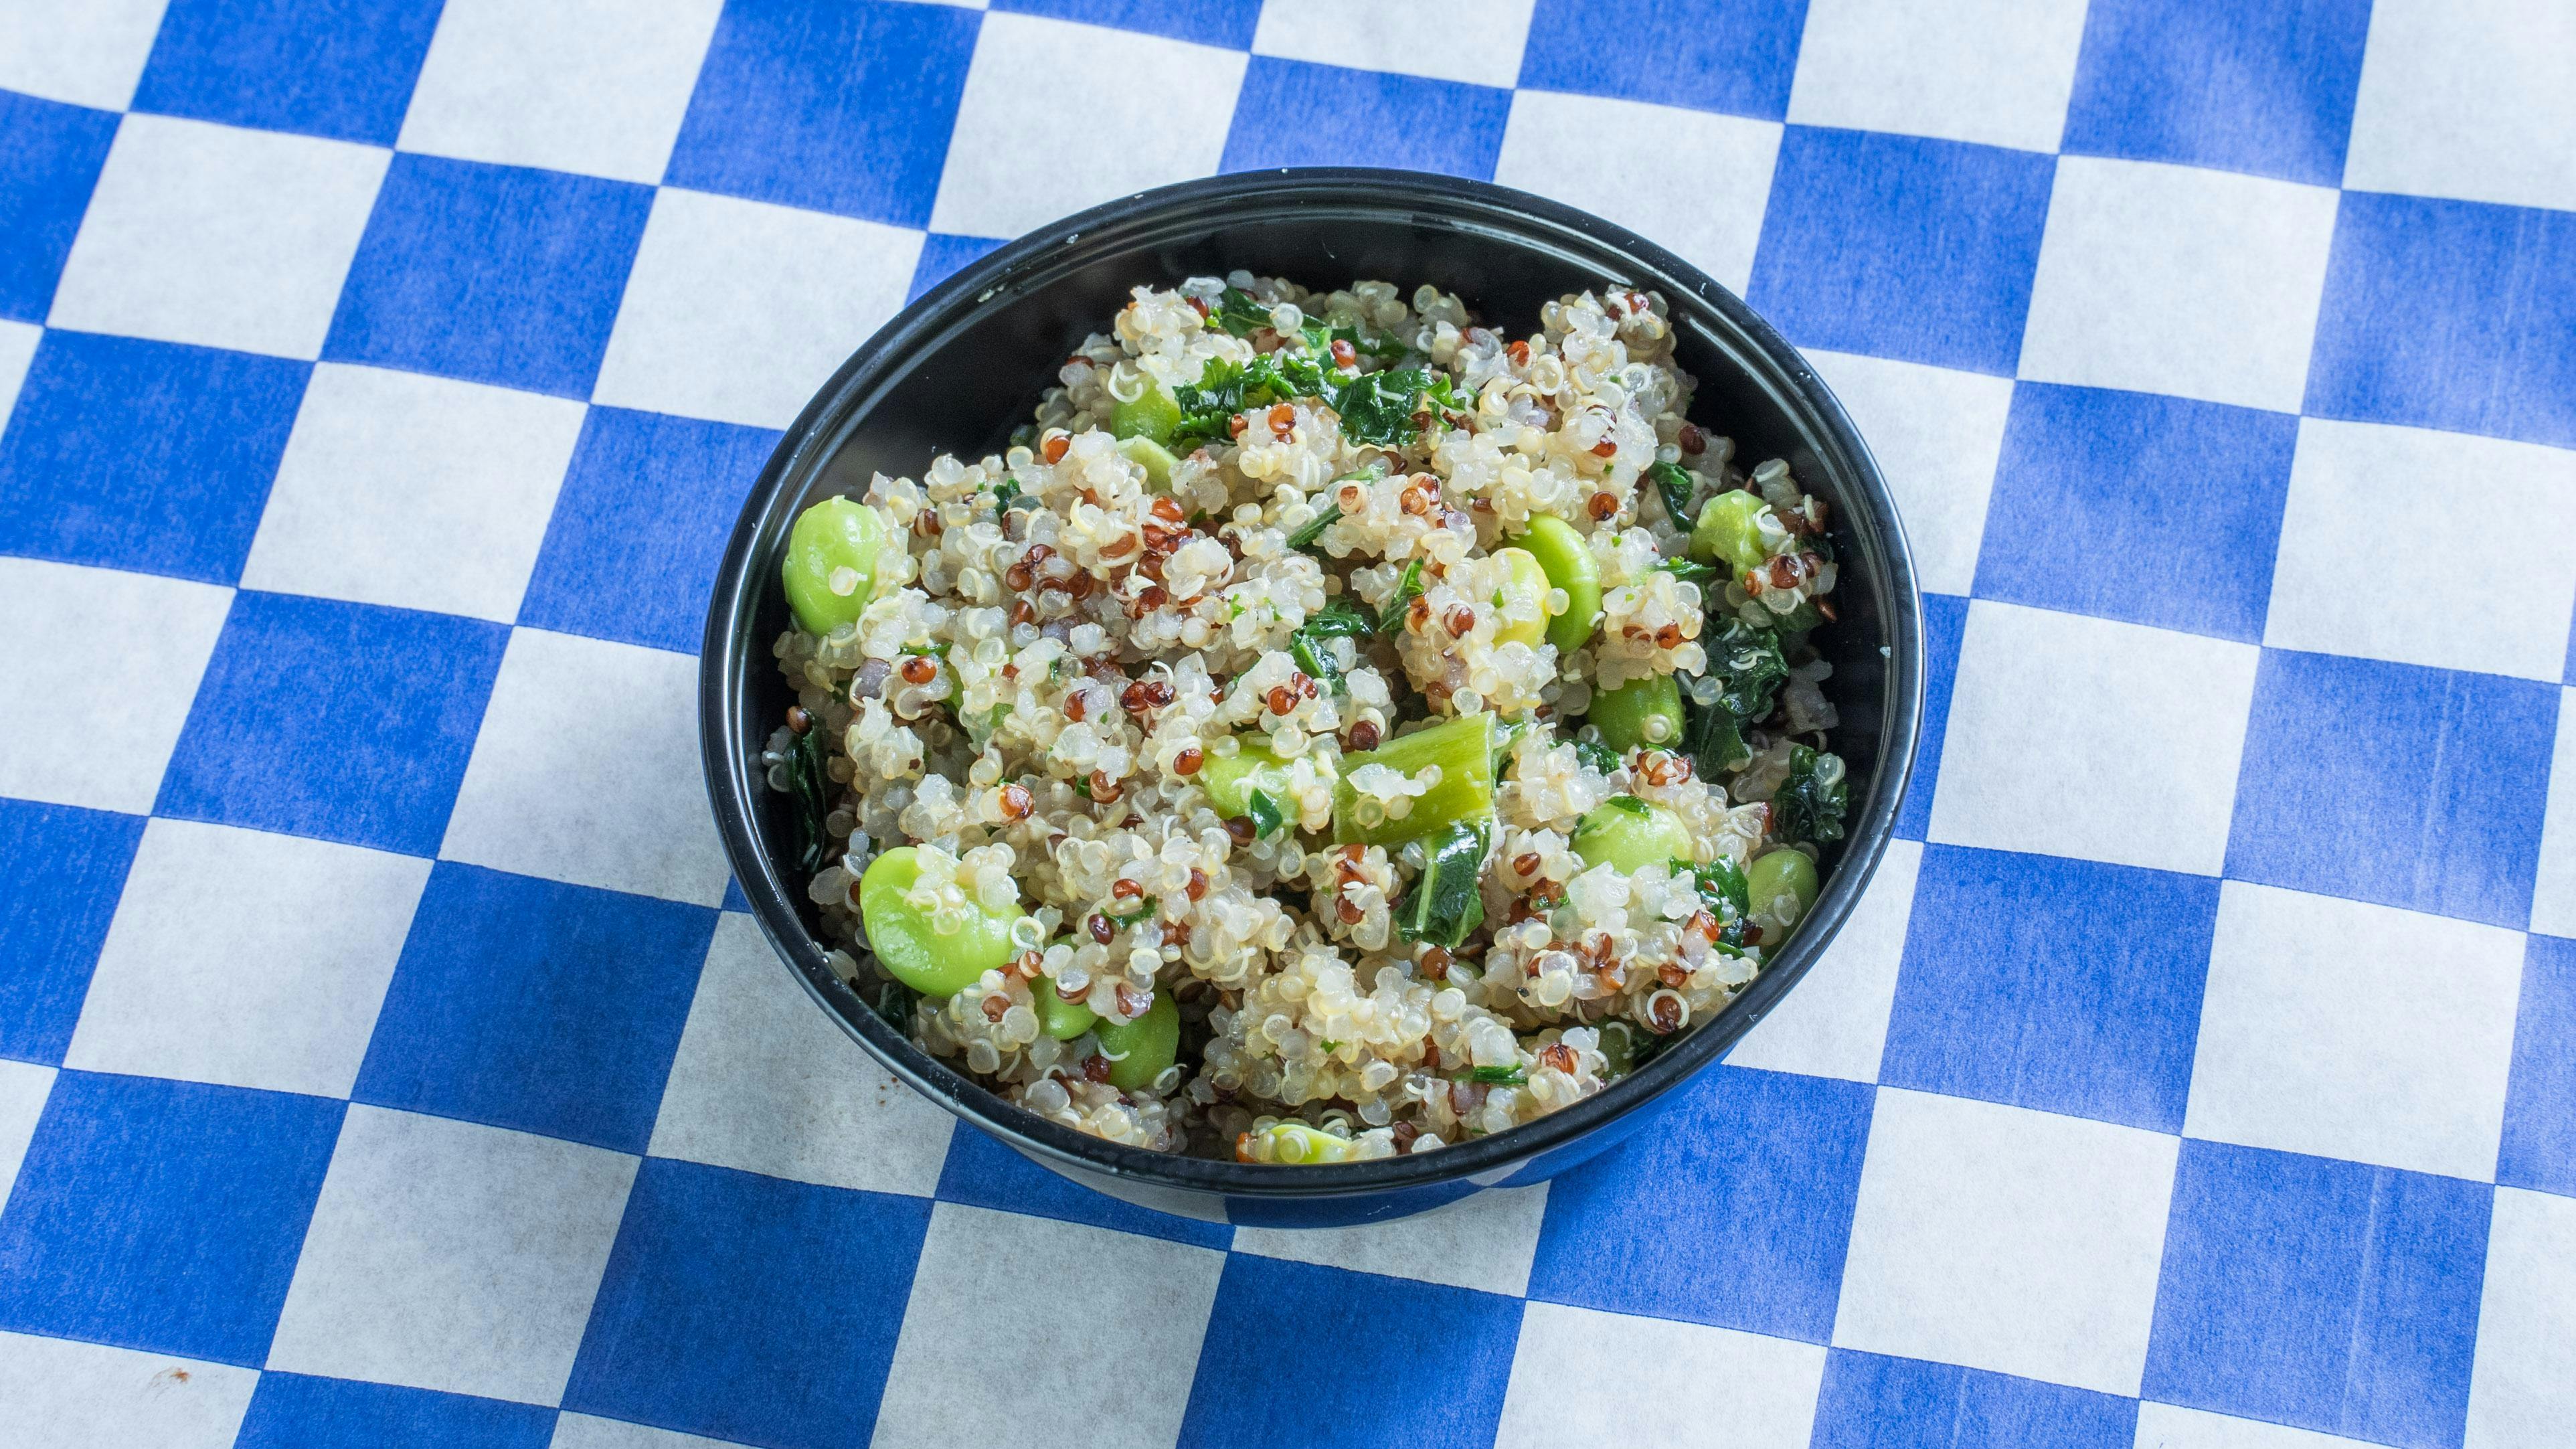 Side Quinoa Edamame Salad from Austin Chicken Sandwich - Burnet Rd in Austin, TX